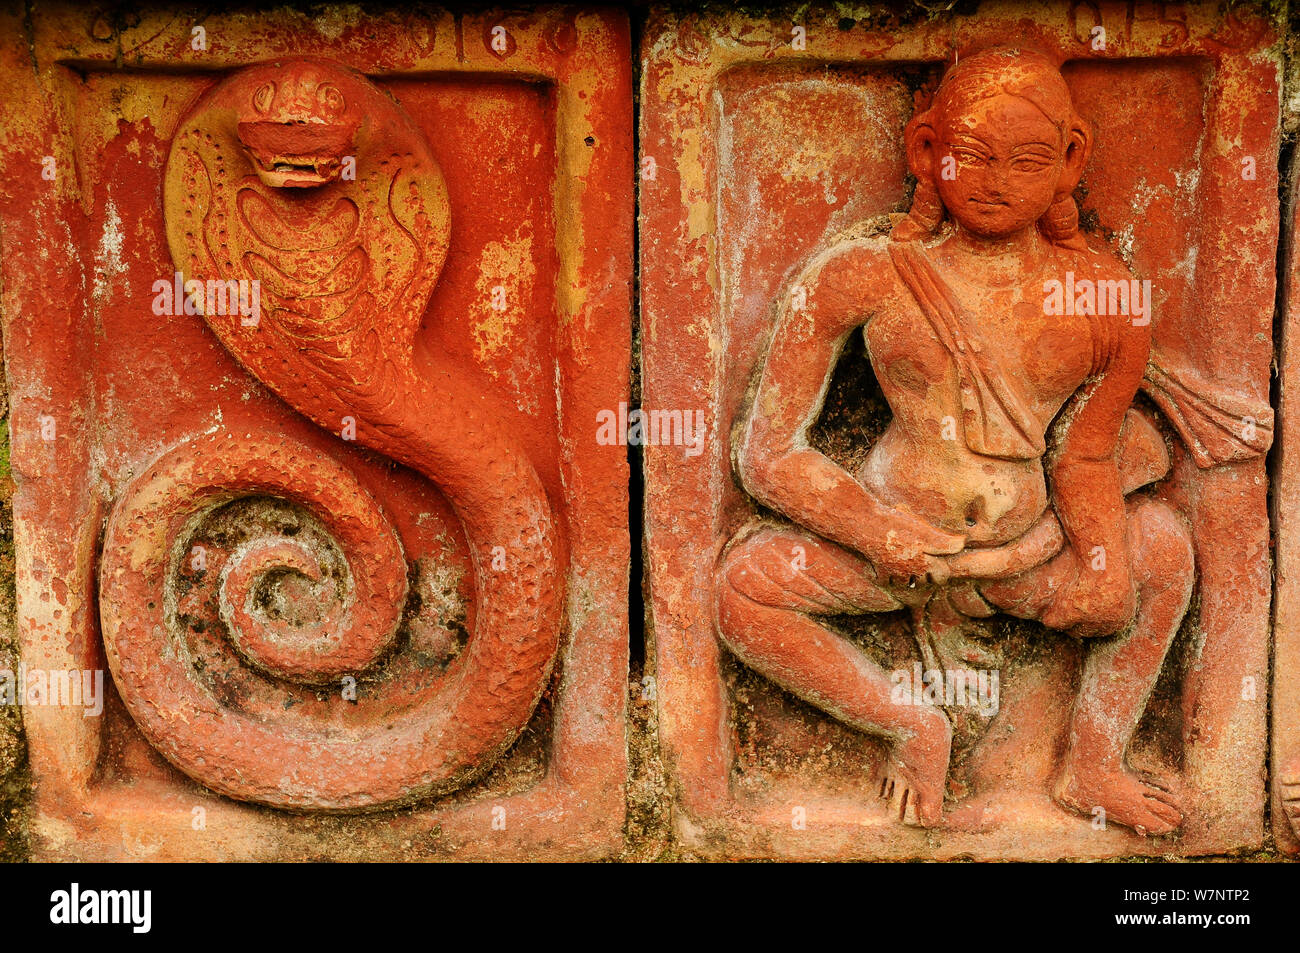 Una imagen de Buda y una cobra grabado en piedra Somapura Mahavihara Monasterio Budista, Paharpur. Patrimonio Mundial de la UNESCO. Bangladesh, junio de 2012. Foto de stock